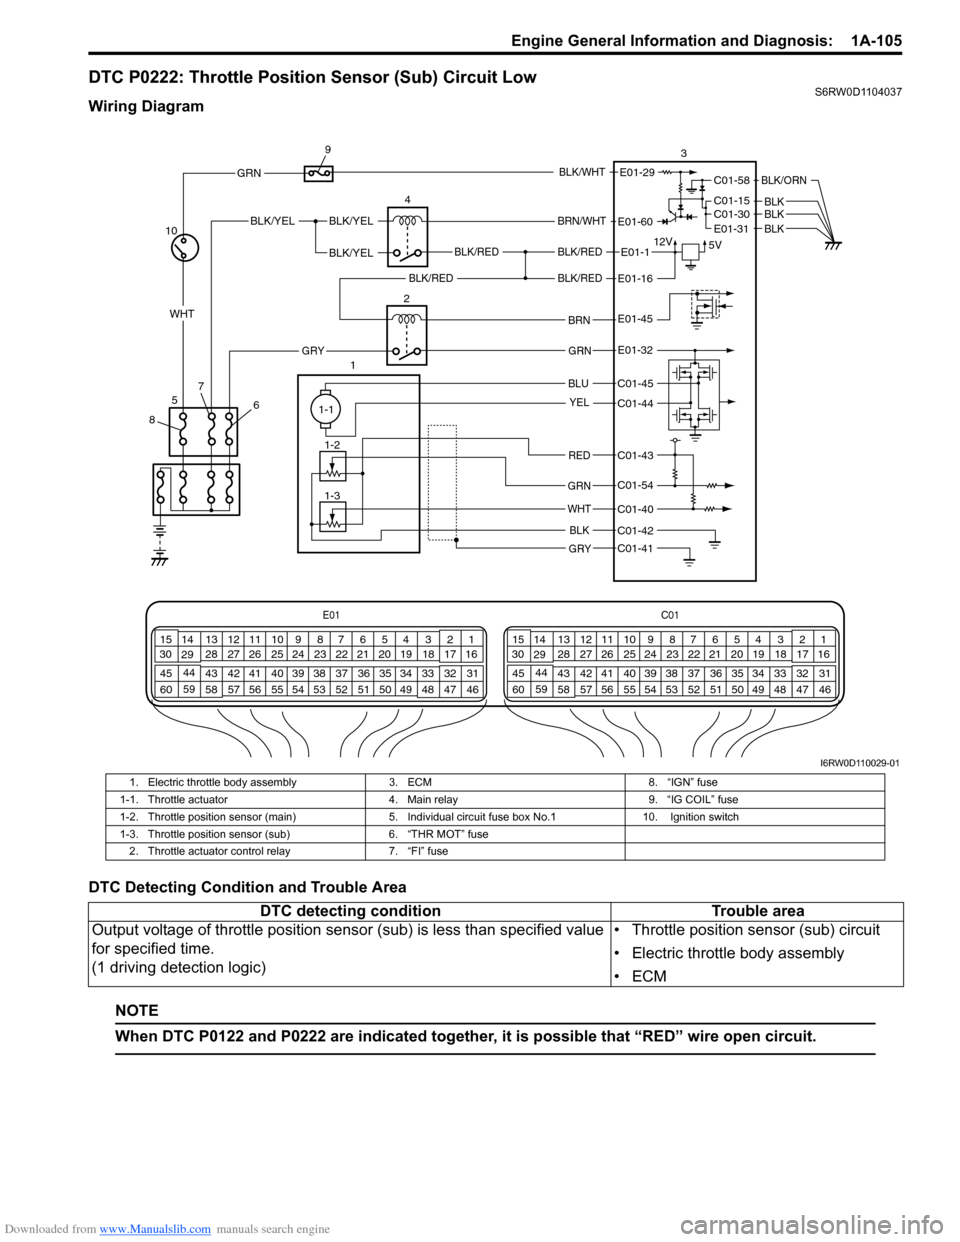 suzuki x4 wiring diagram